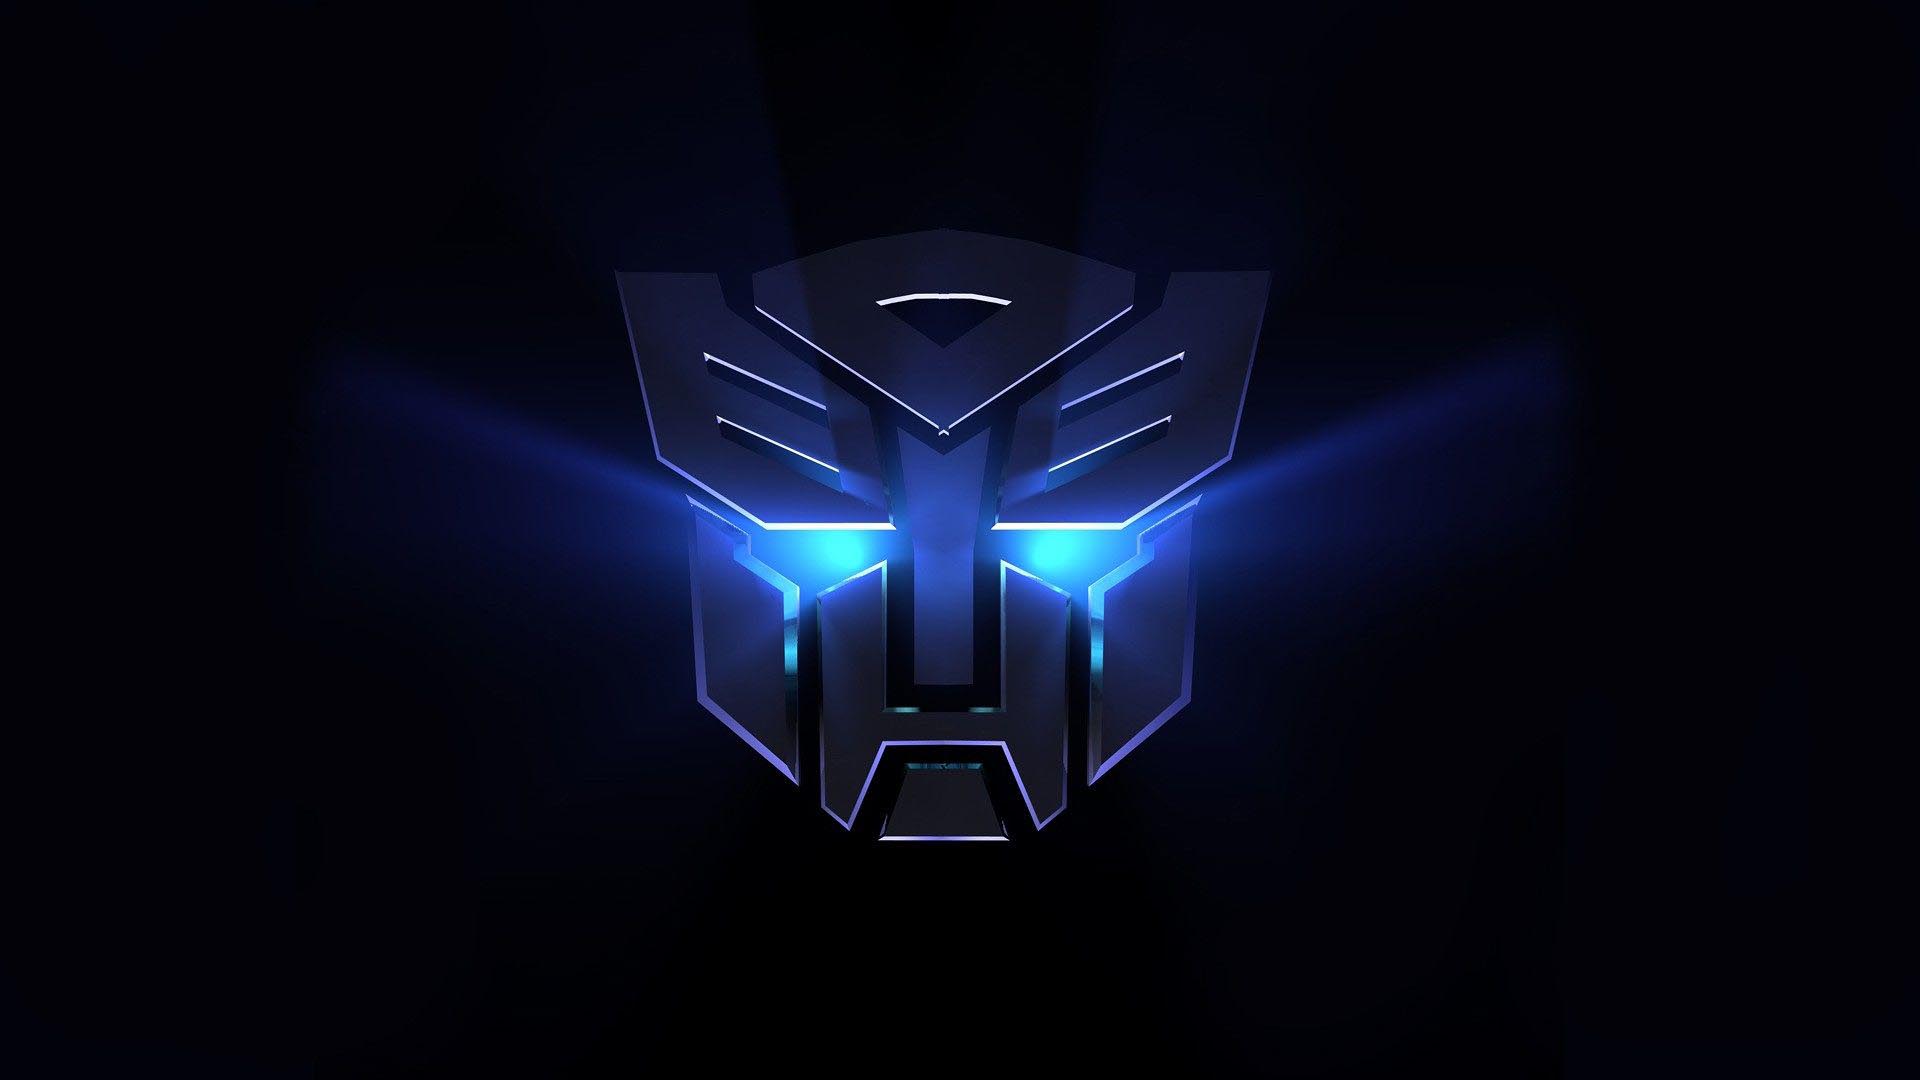 El “spin-off” de la saga “Transformers” contará con el carismático robot amarillo de los Autobots como protagonista